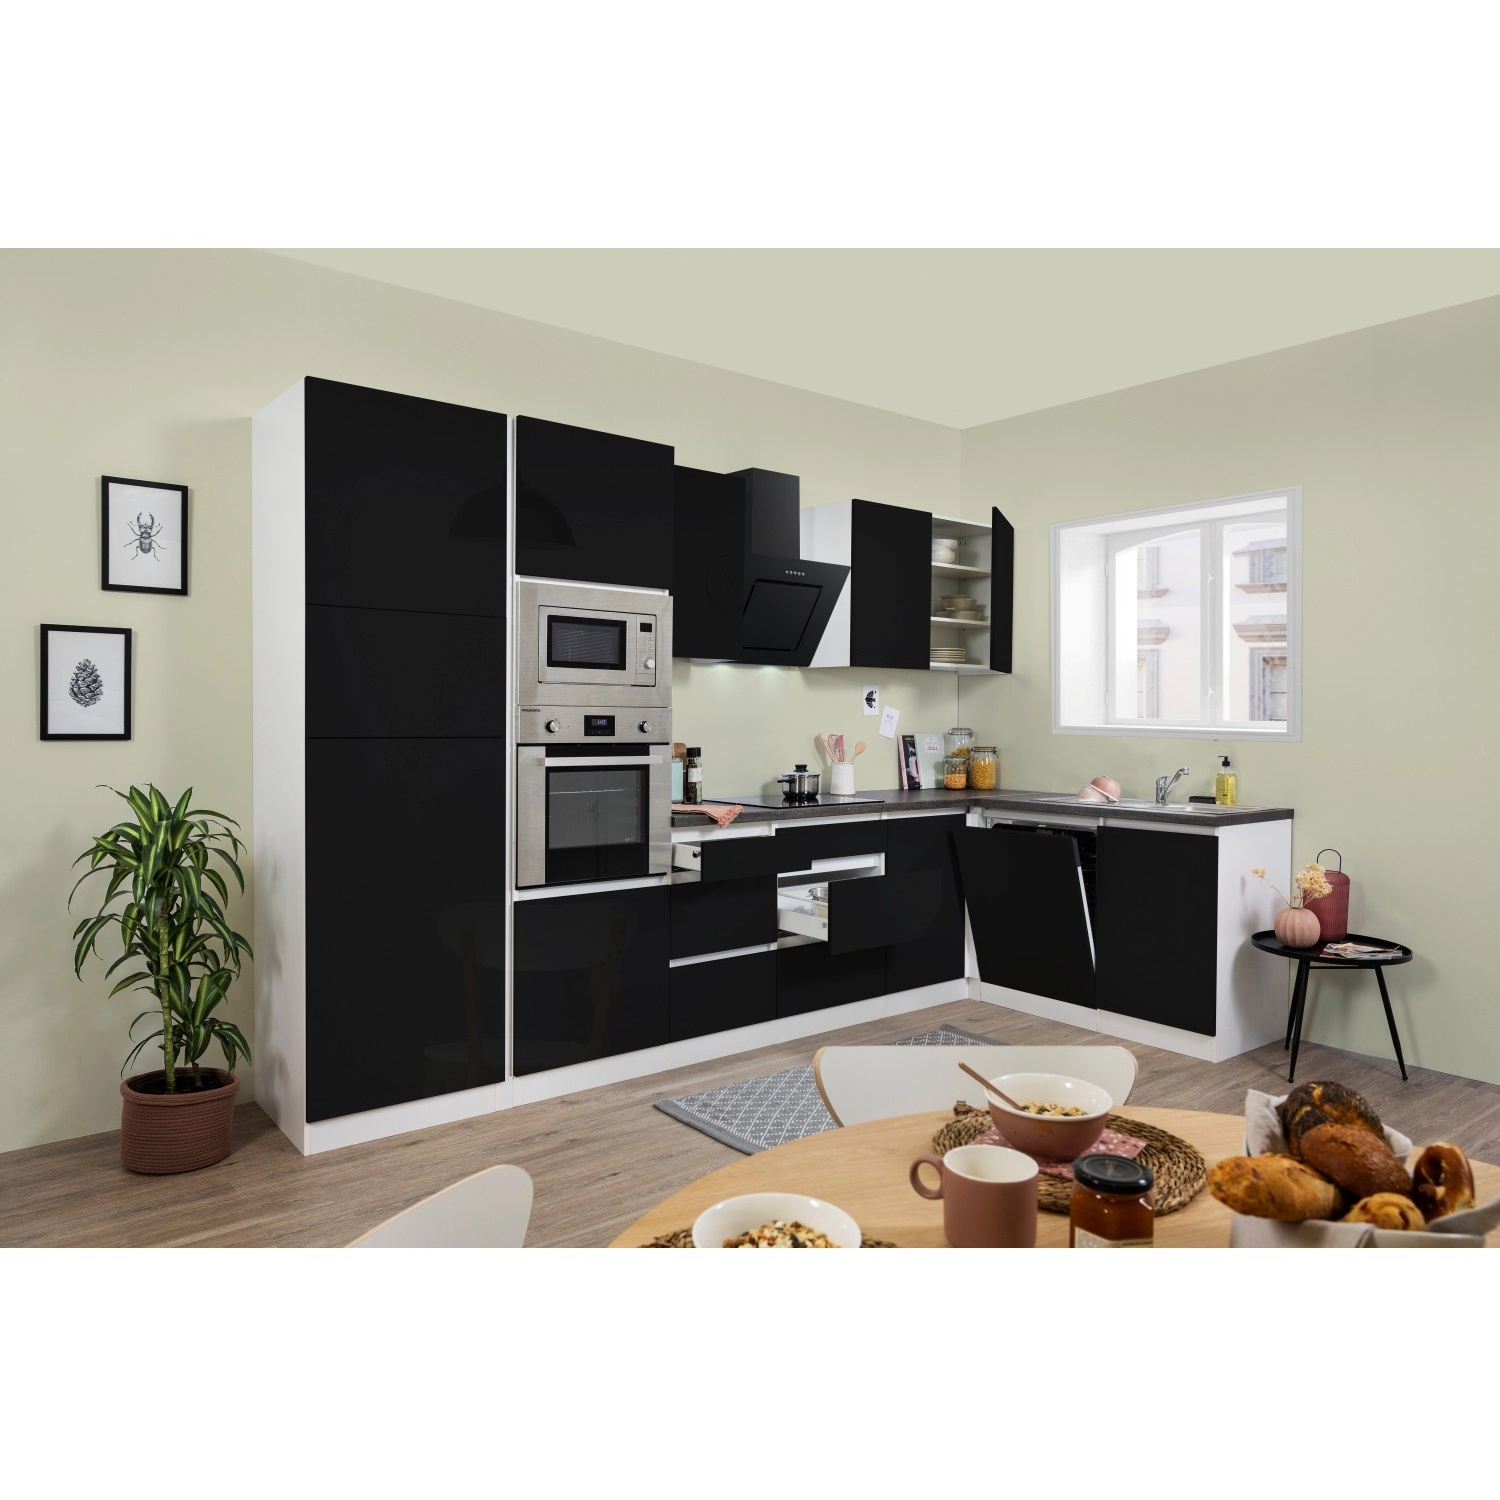 Bild von Winkelküche Lorena L-Form 345 x 175 cm E-Geräte schwarz hochglänzend/weiß